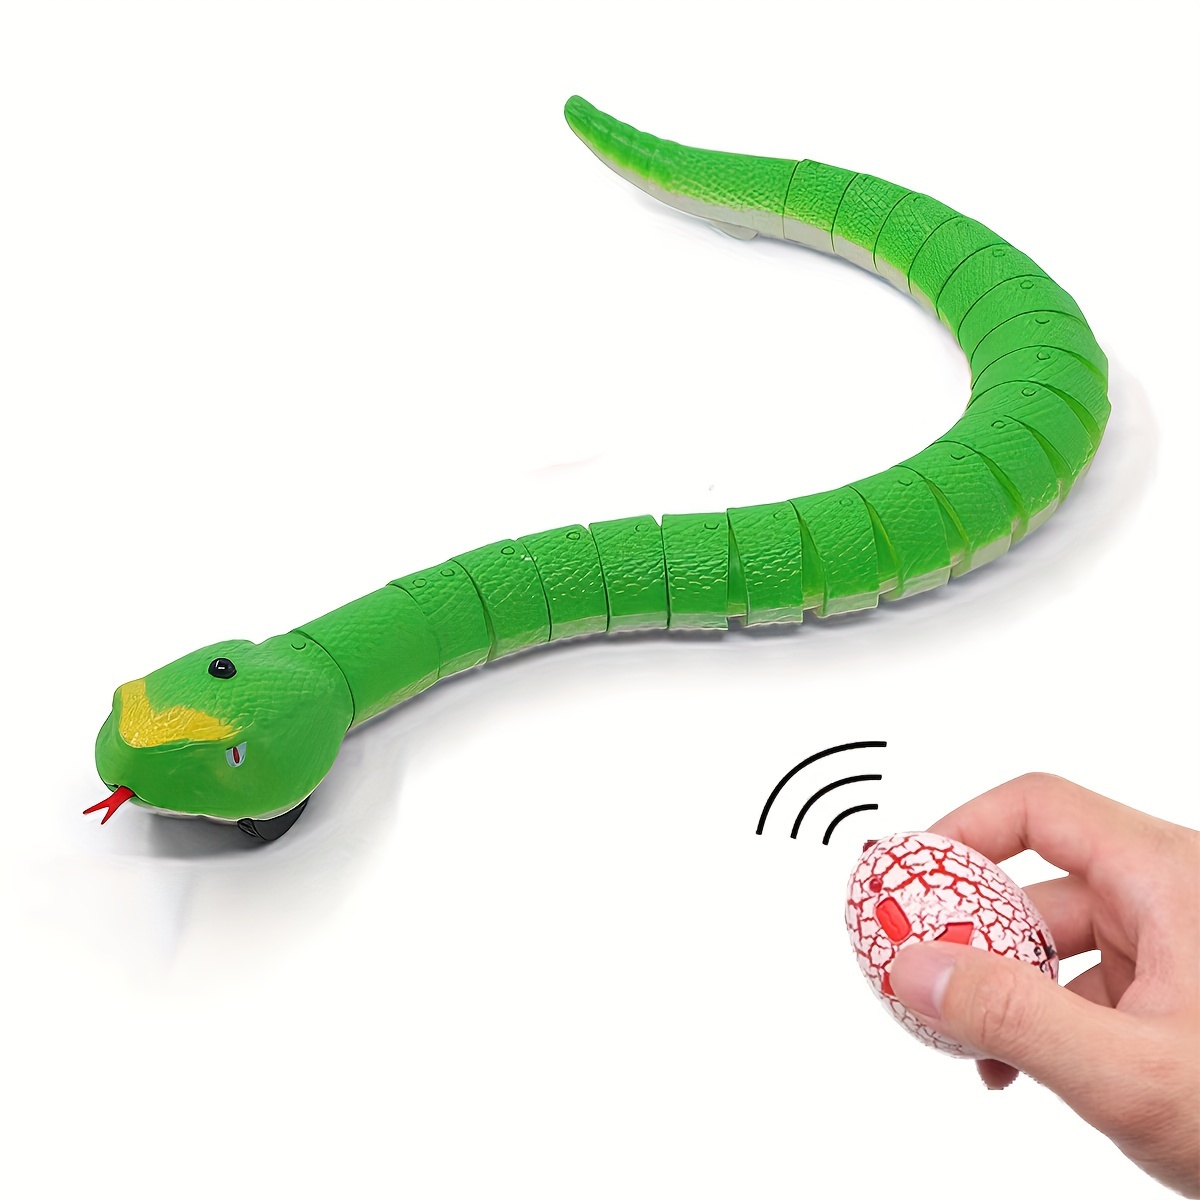 Serpiente falsa, juguete de pitón de simulación, serpiente realista para  broma espeluznante, juguete de serpiente aterradora, bueno para Halloween